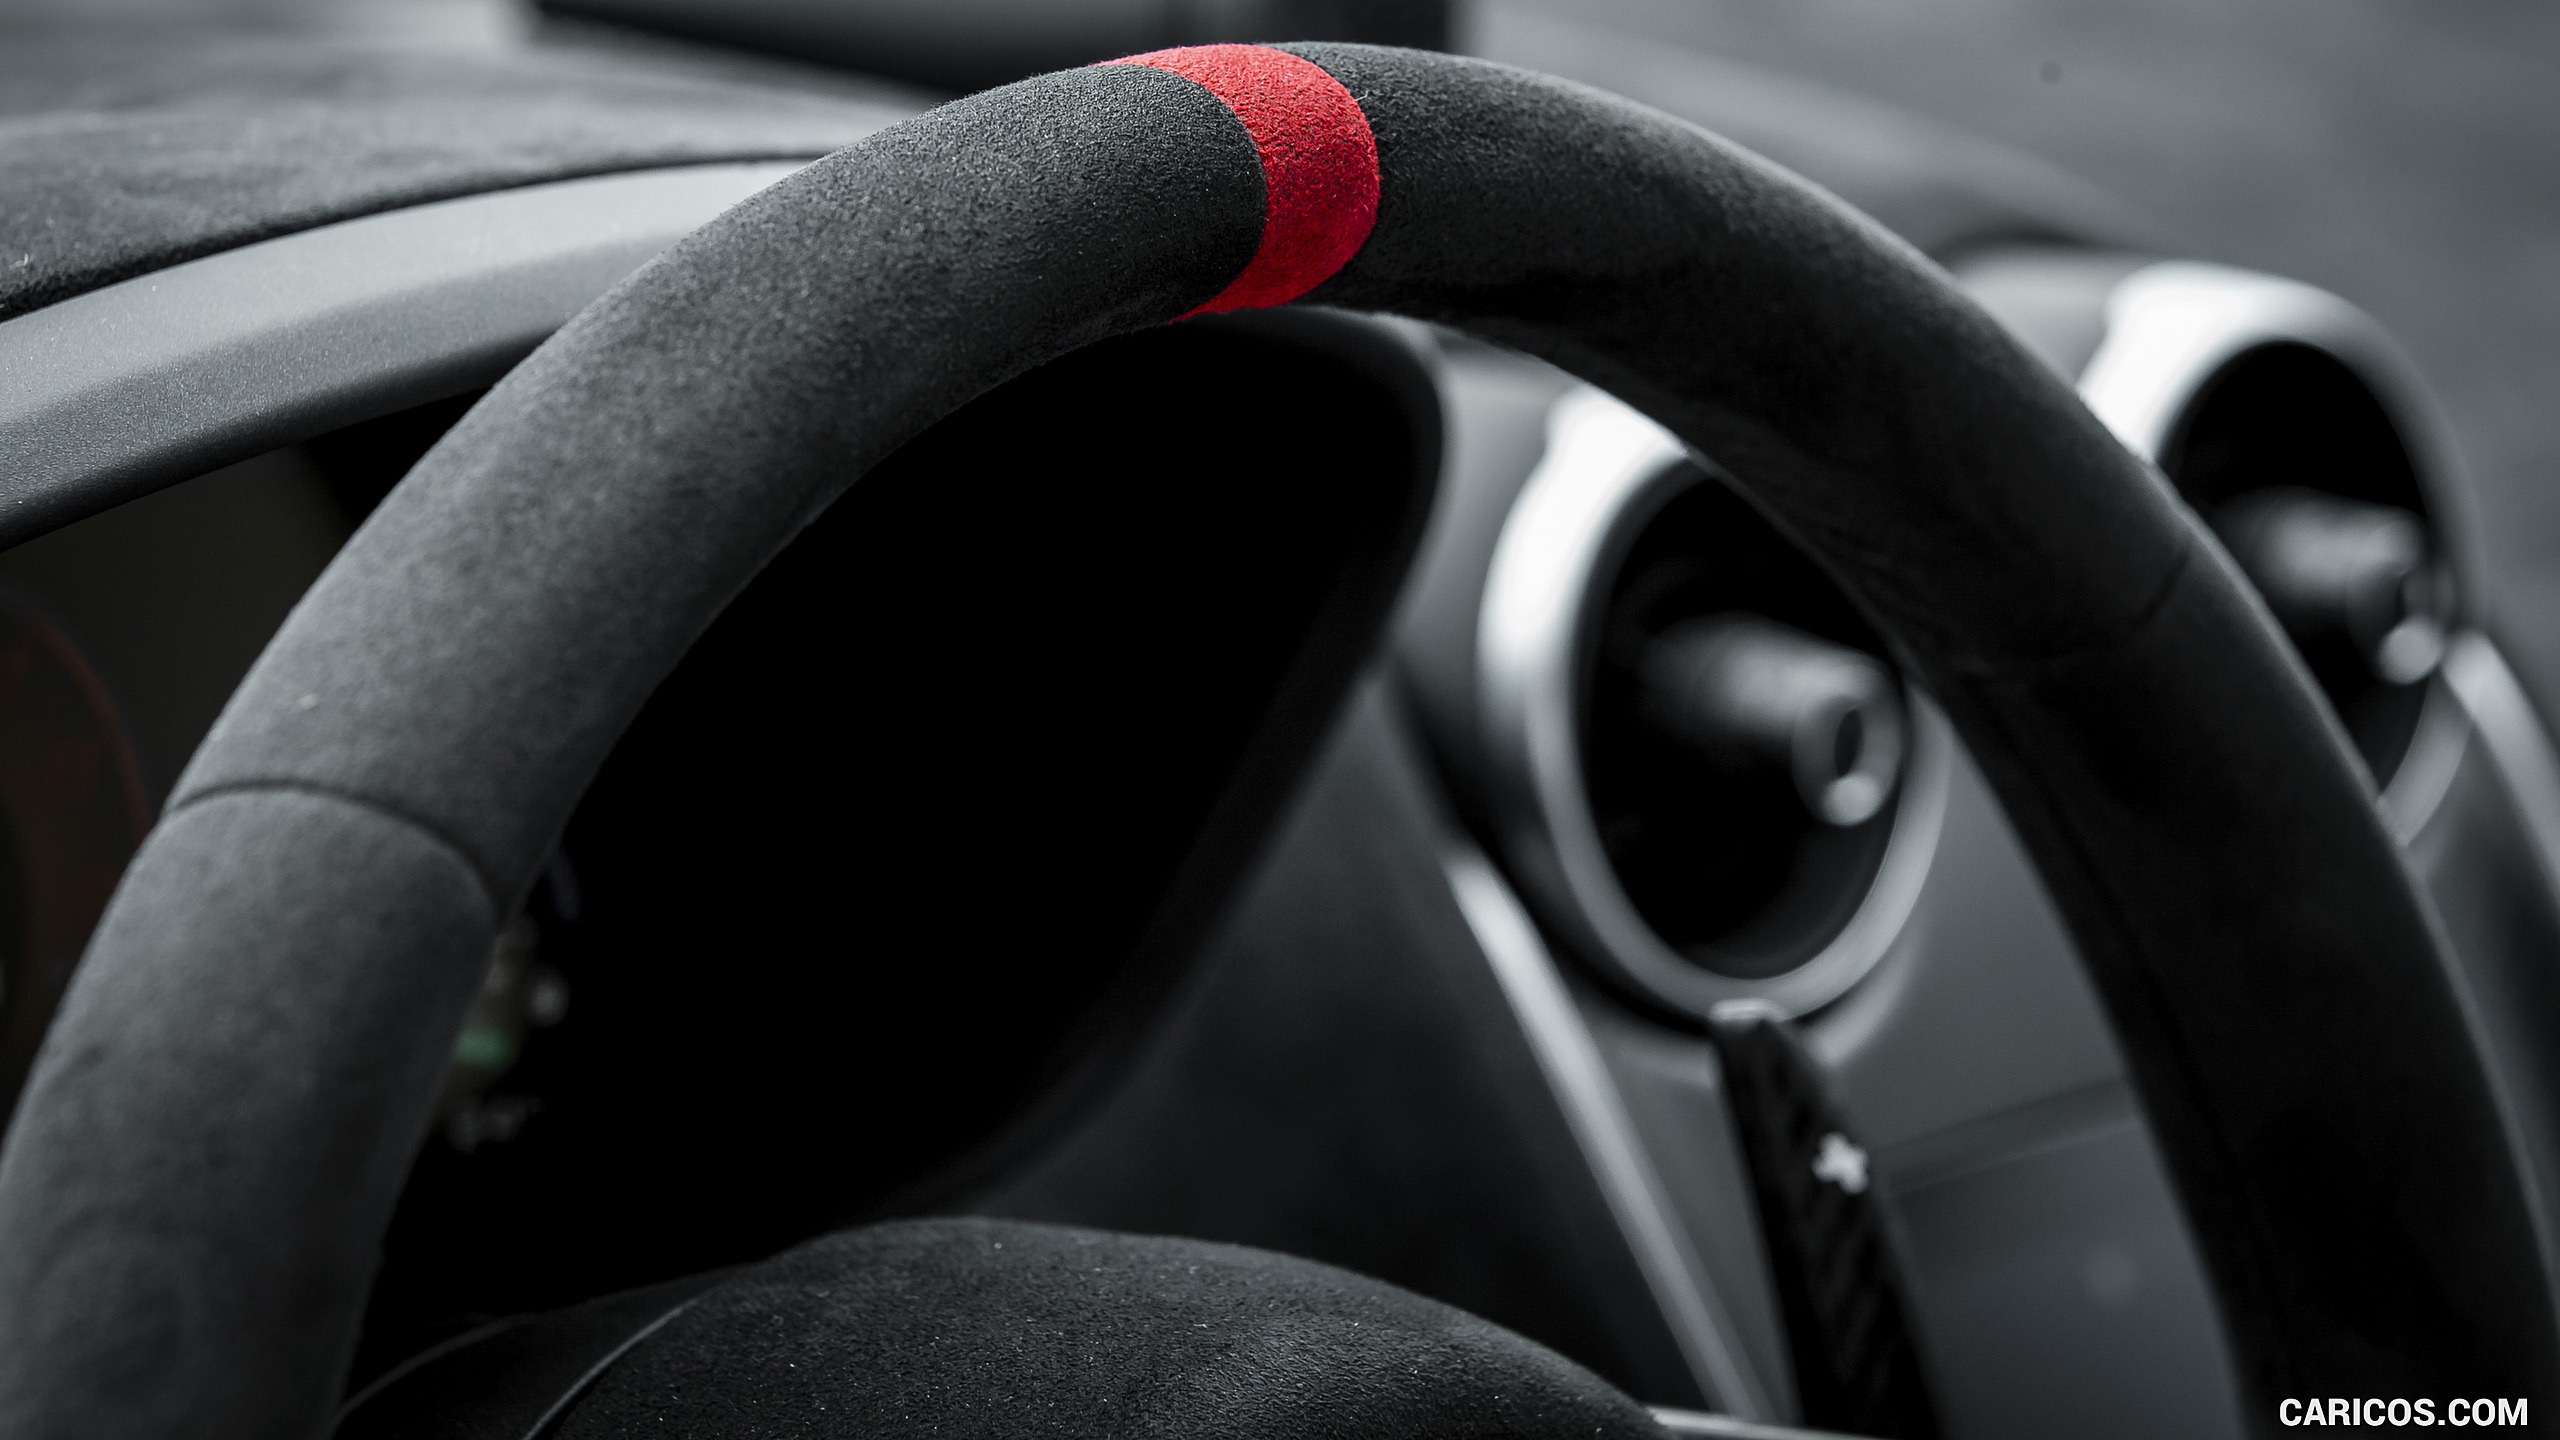 2020 McLaren 620R - Interior, Steering Wheel, #39 of 45